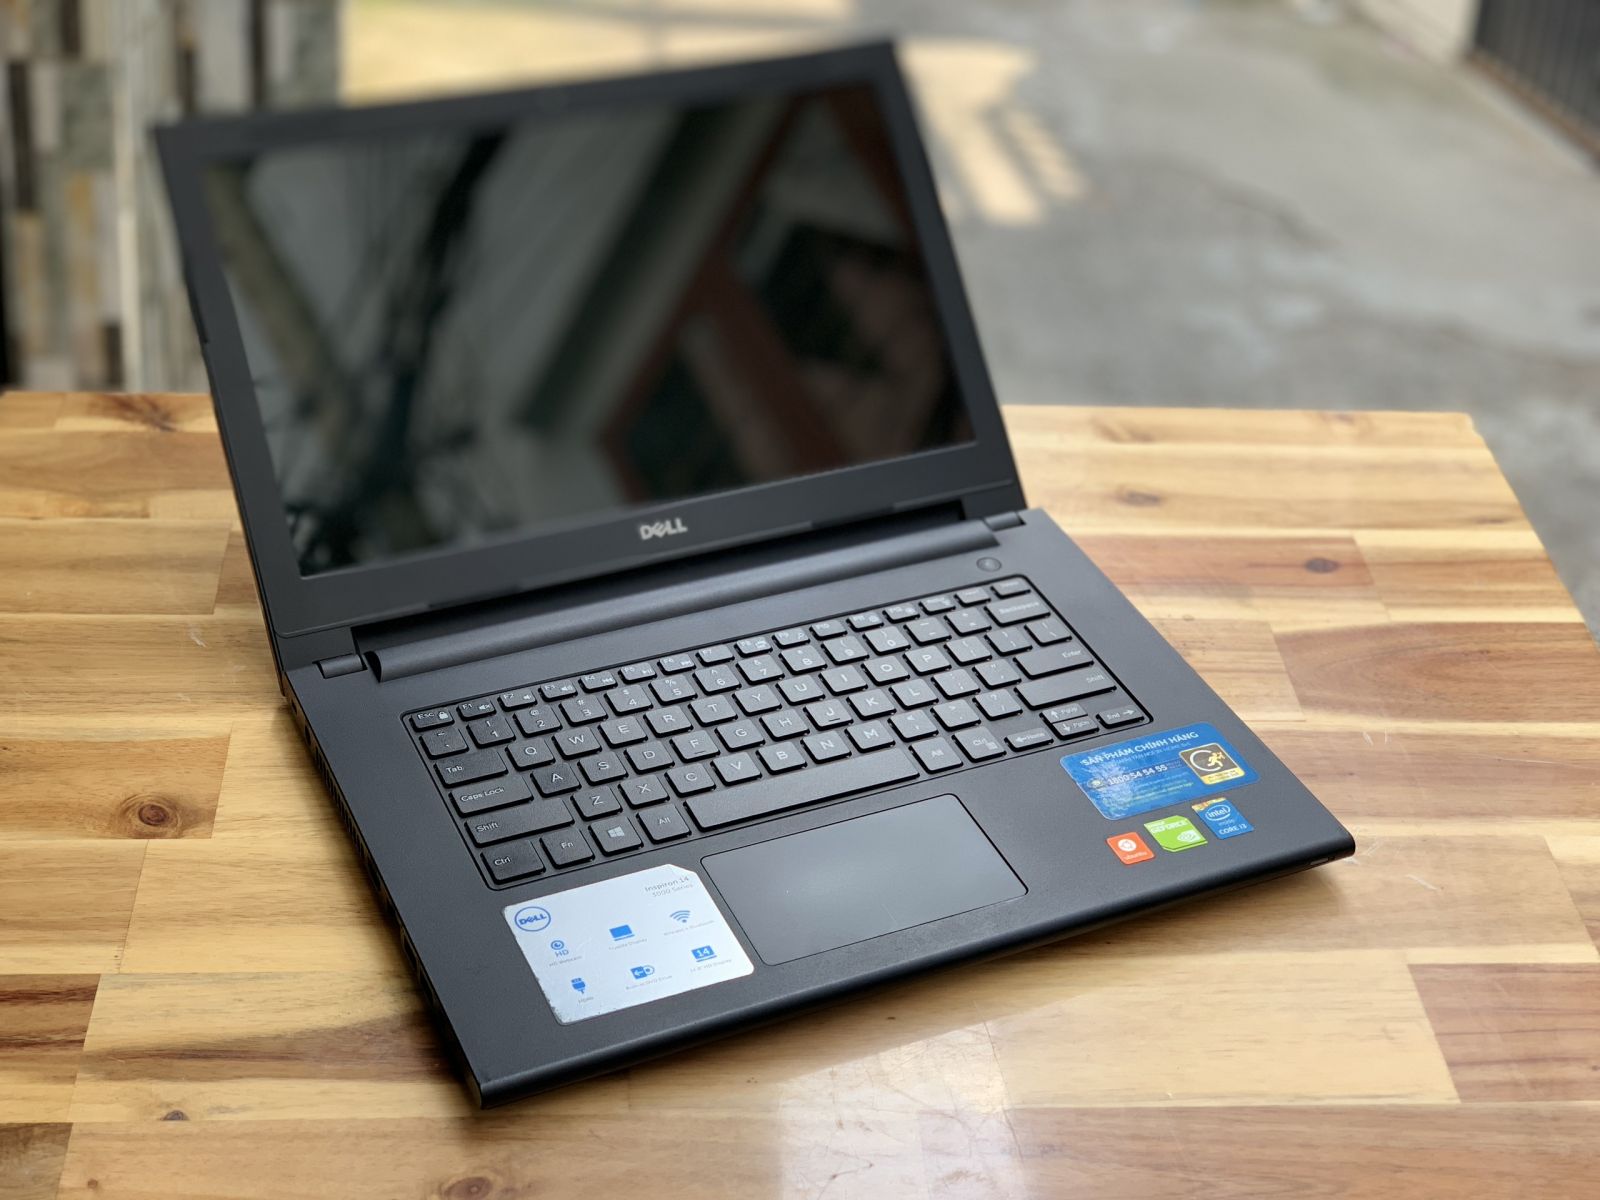 Laptop Dell Inspiron 3442, i3 4005U 4G 500G 14inch Đẹp zin 100% giá rẻ - 1